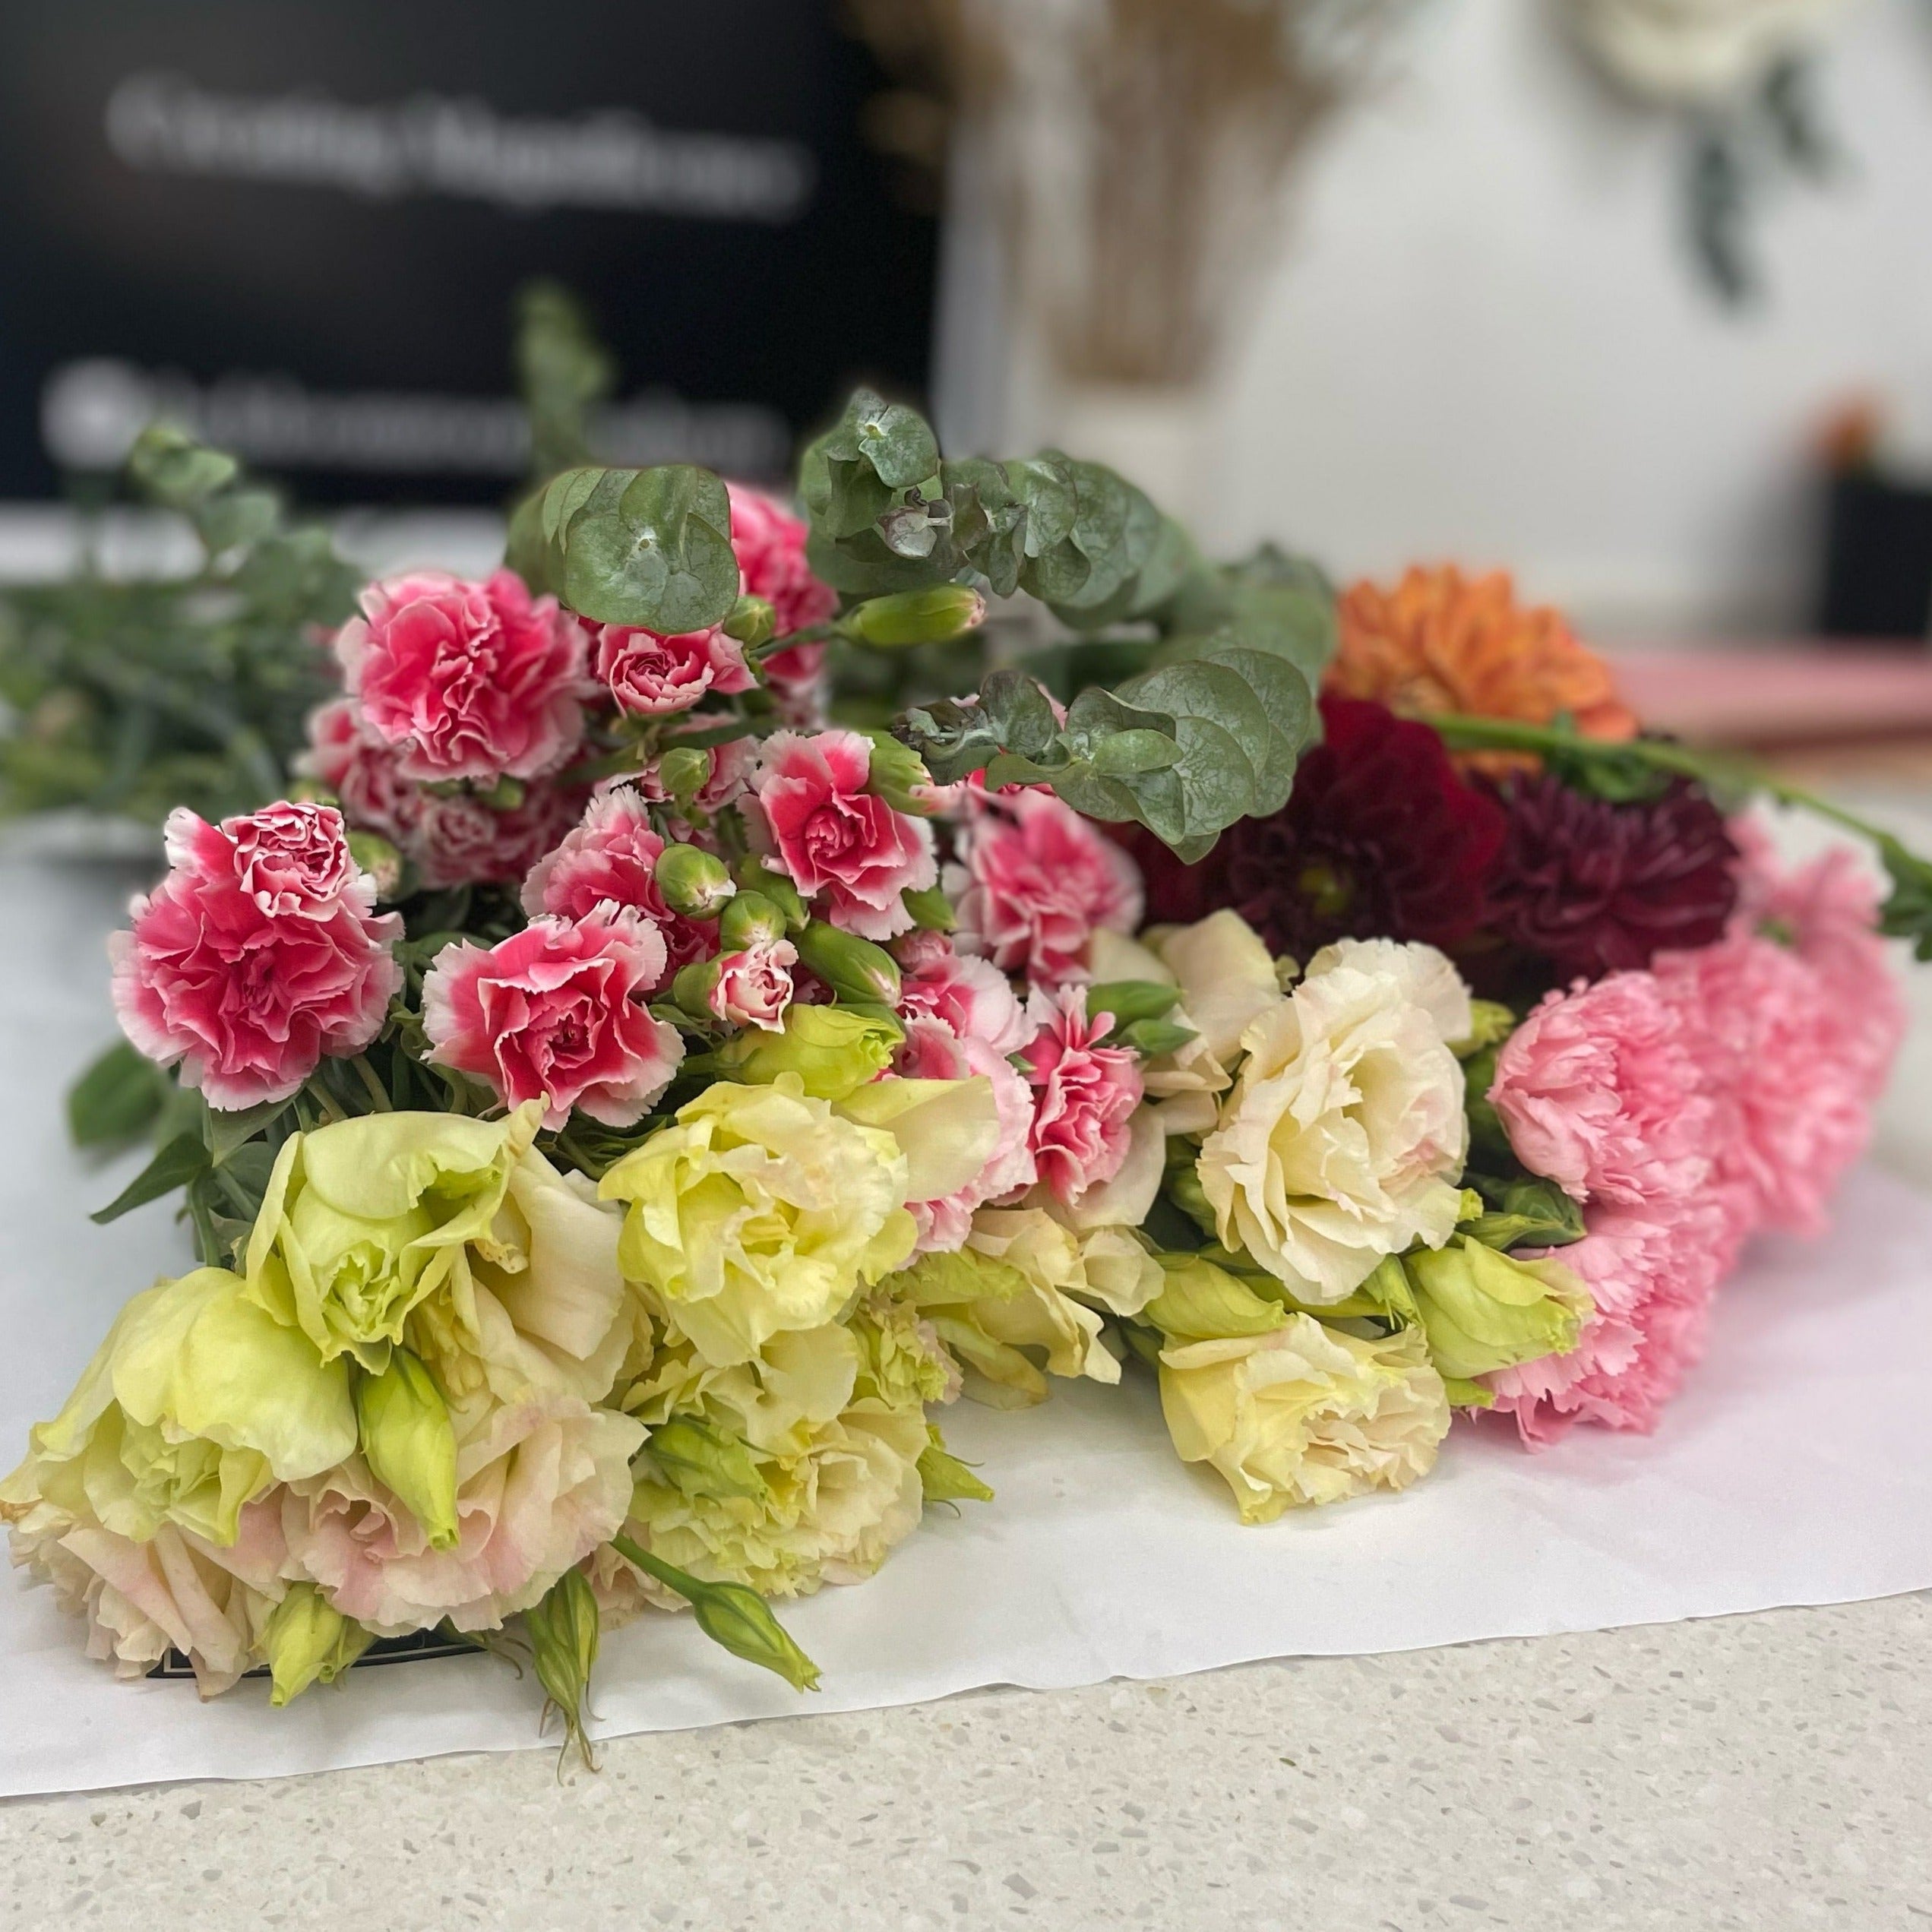 Seasonal Fresh Cut Flowers - The Bloom Room 